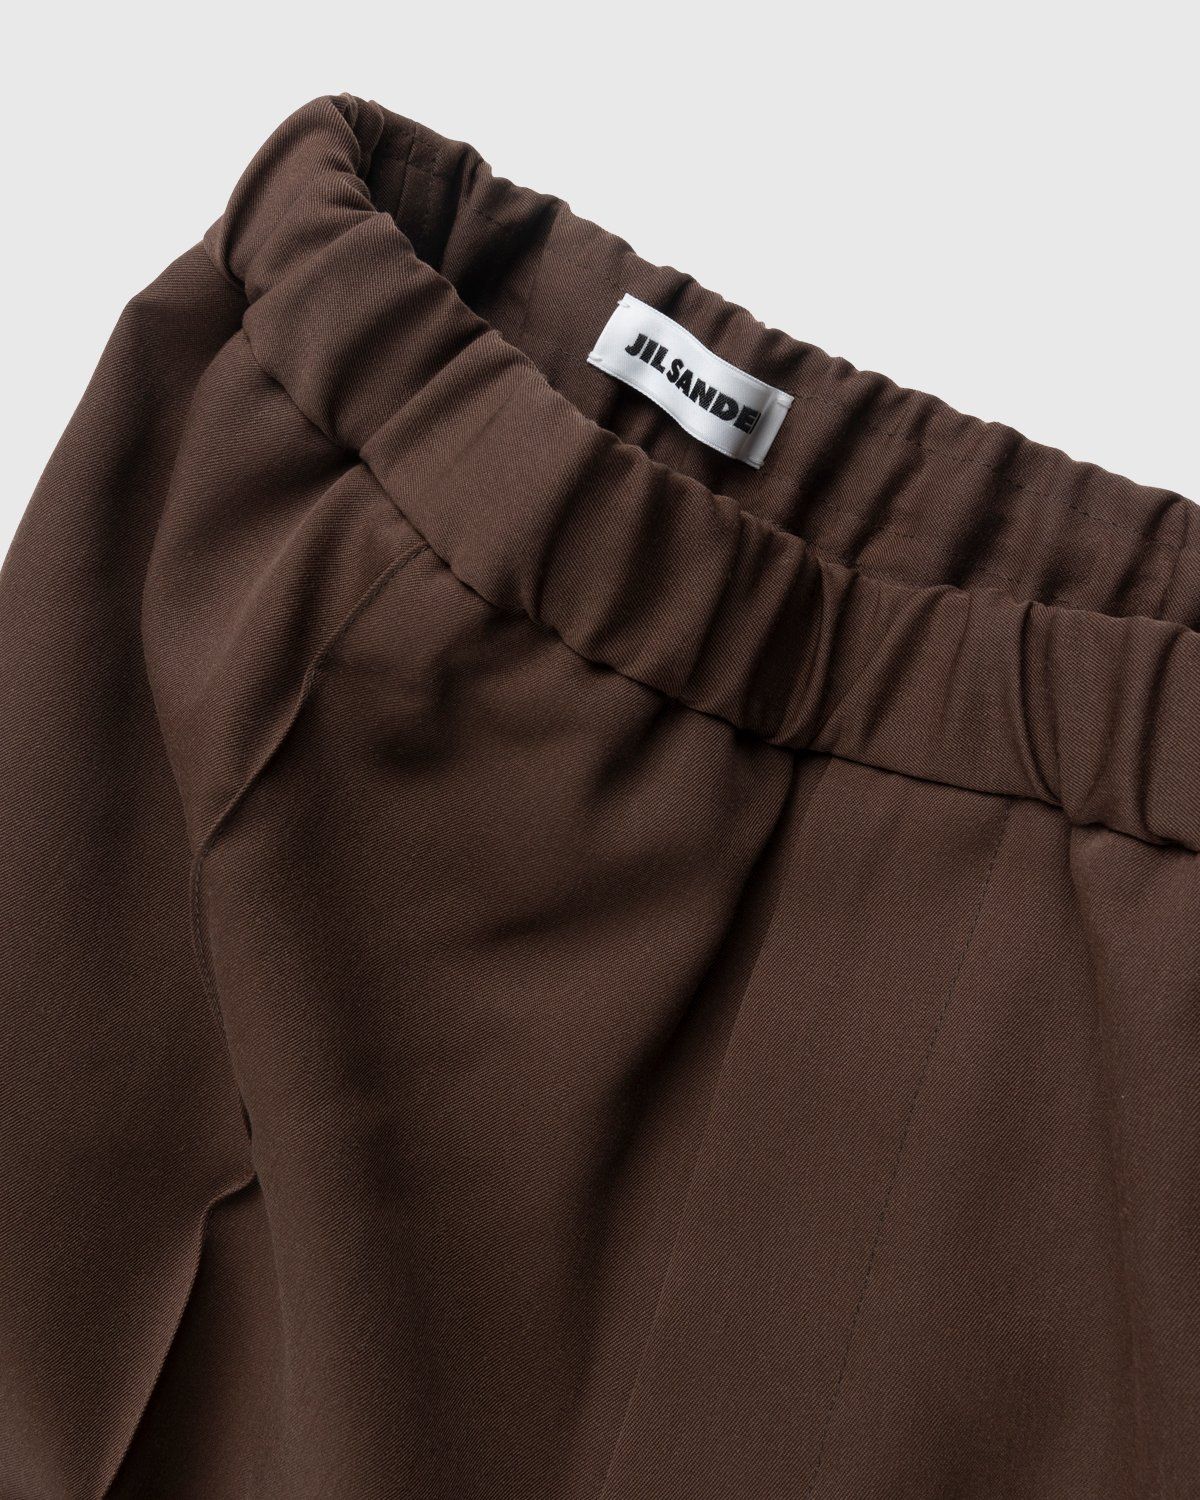 Jil Sander – Wool Trousers Medium Brown - Pants - Brown - Image 3